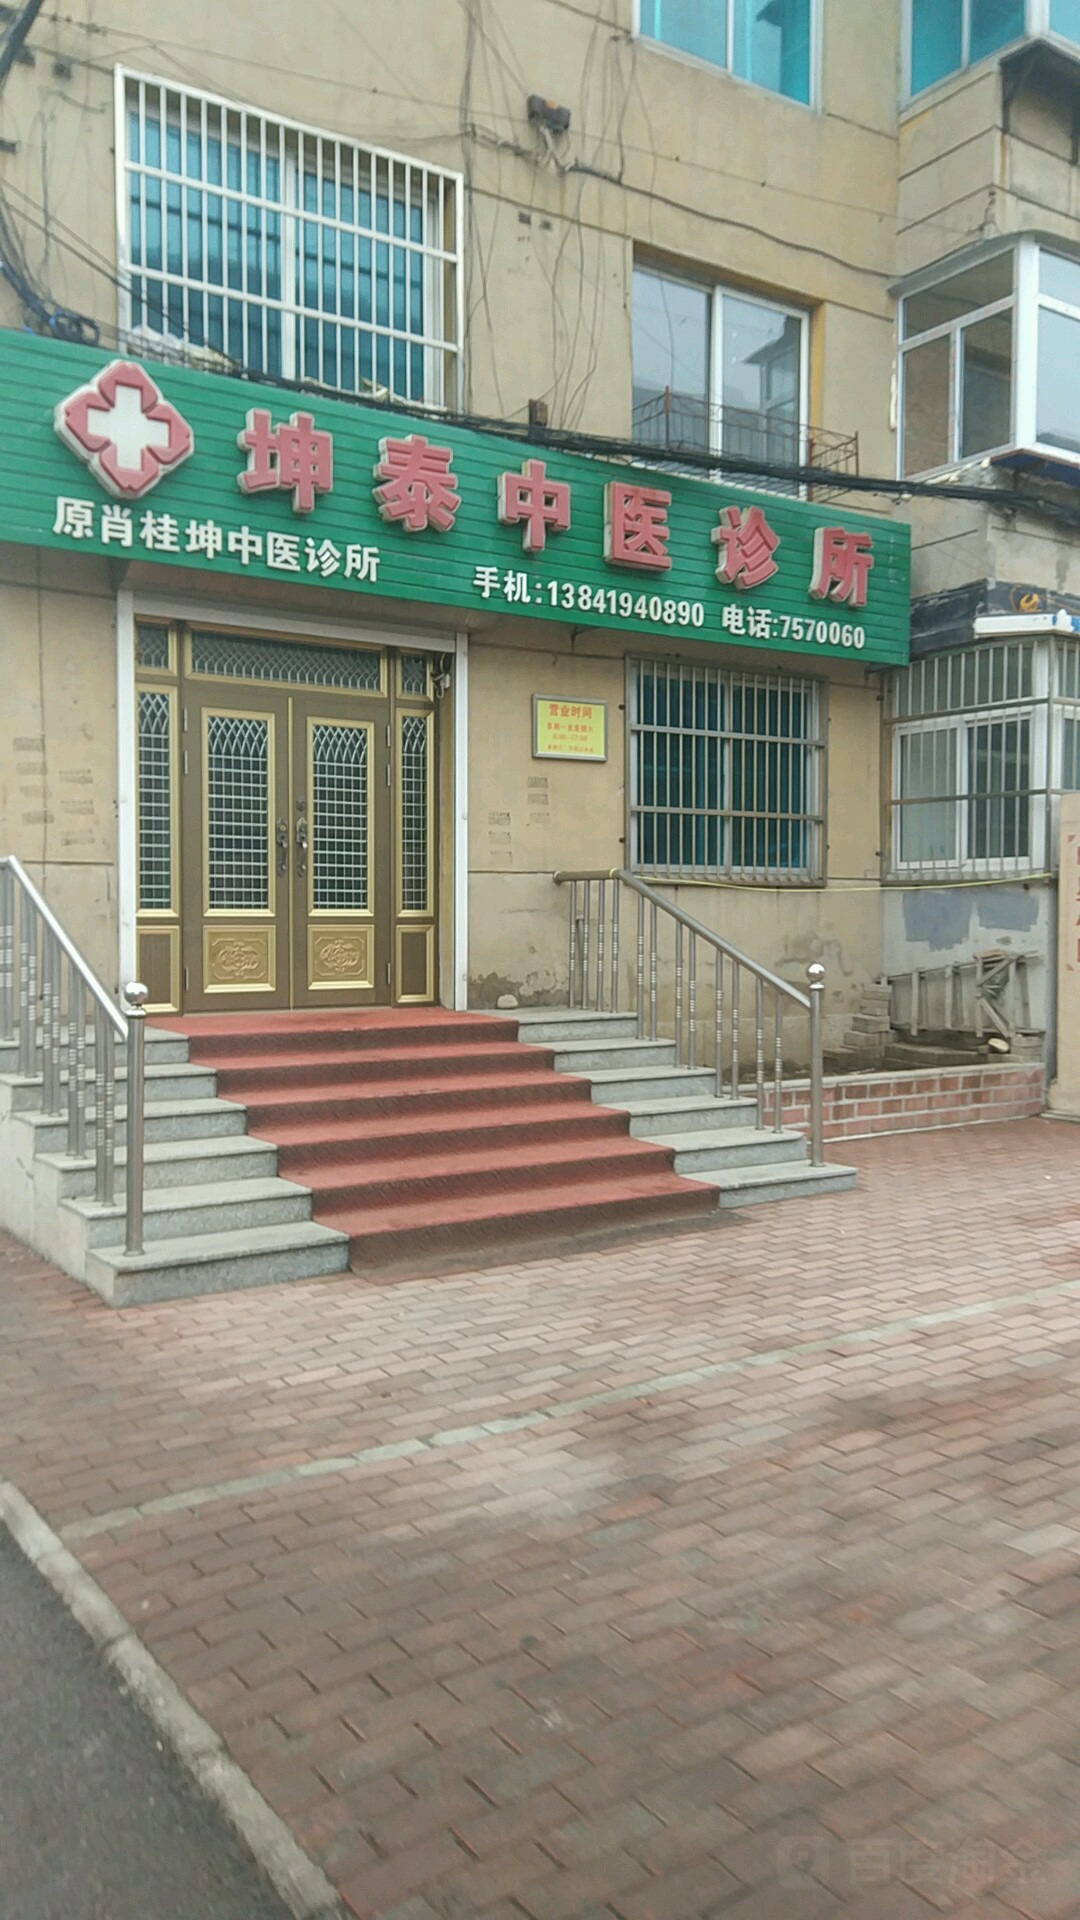 坤泰中醫診所